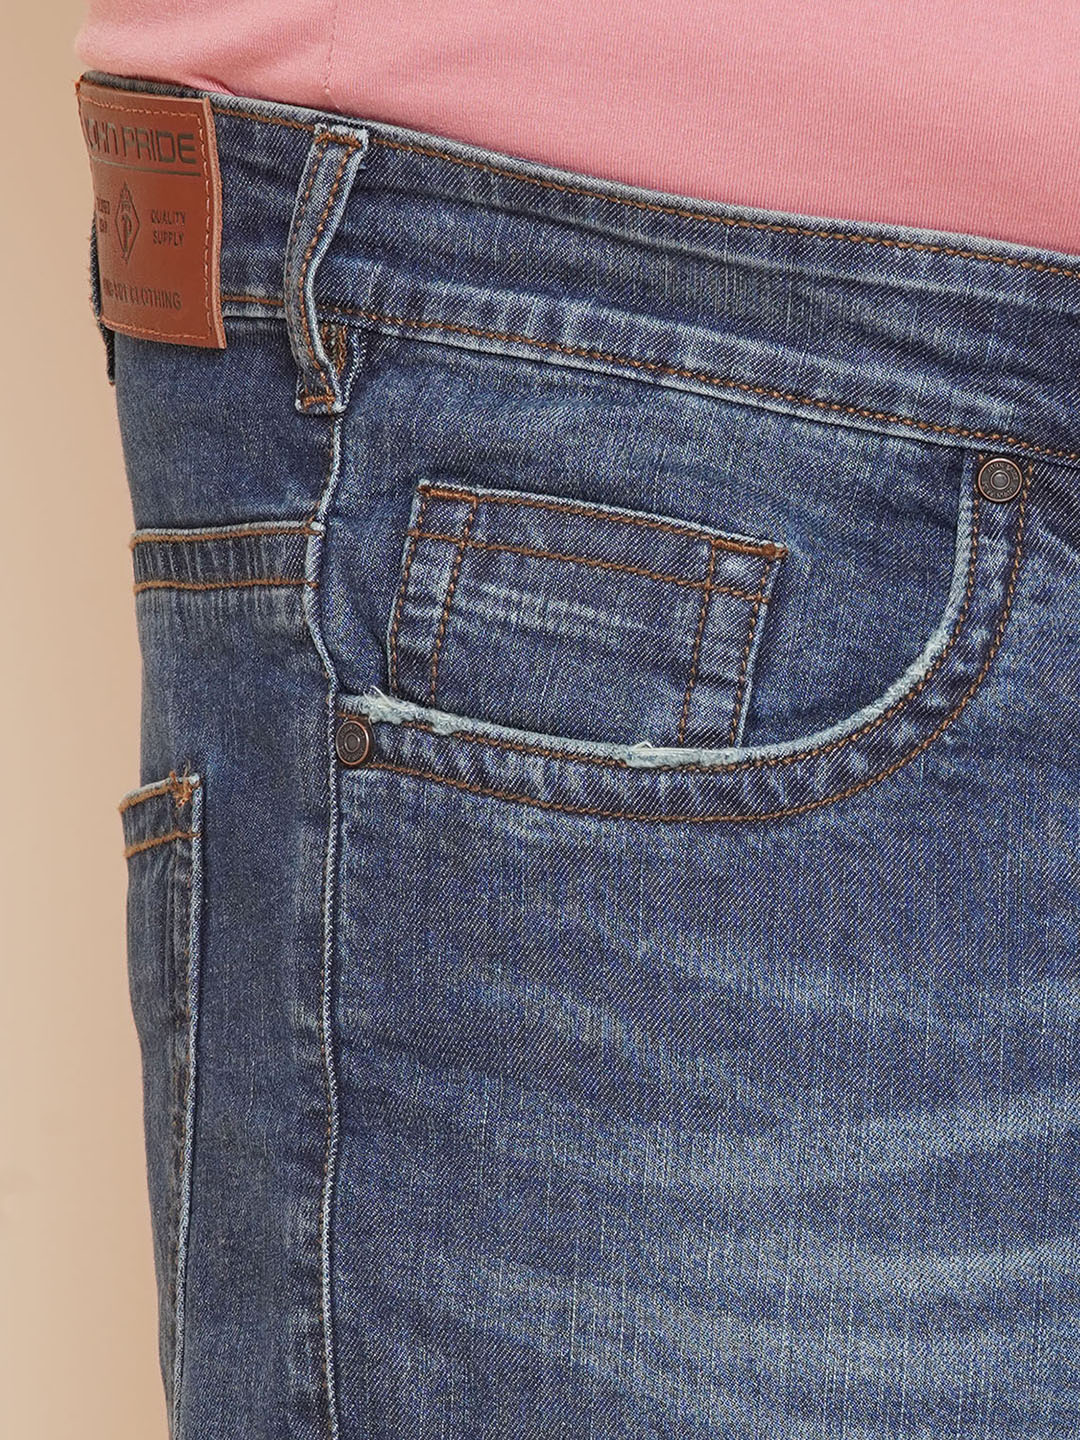 bottomwear/jeans/JPJ27019/jpj27019-2.jpg